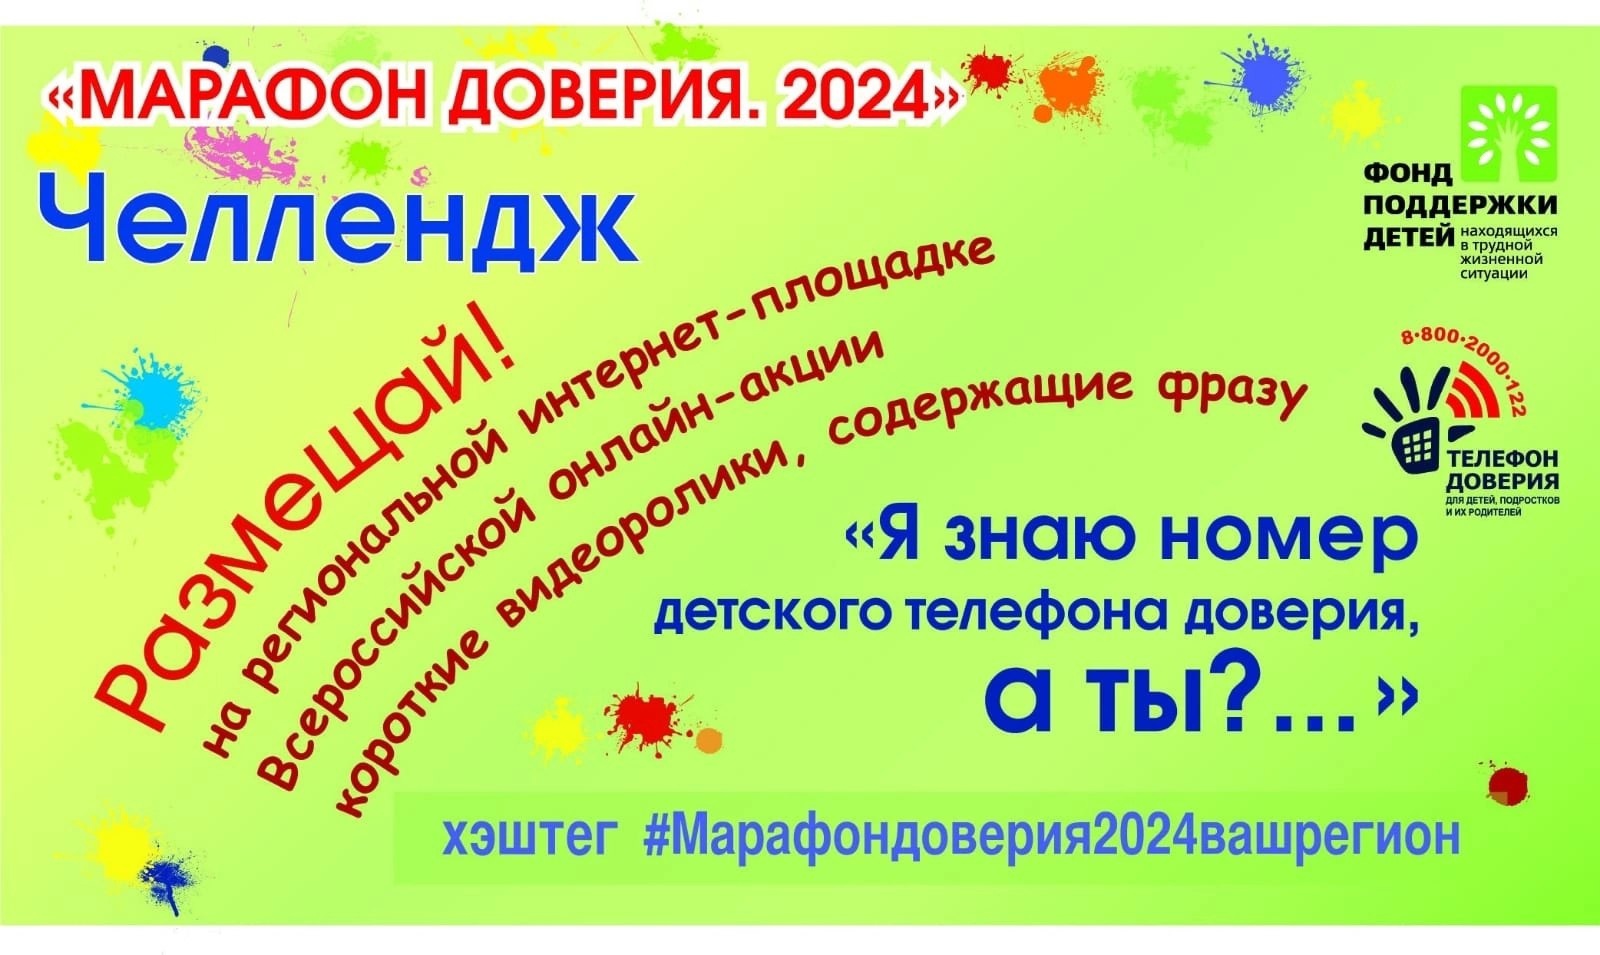 Участники кружка "Мой мир" присоединяются к Всероссийской онлайн - акции "Марафон доверия.2024".